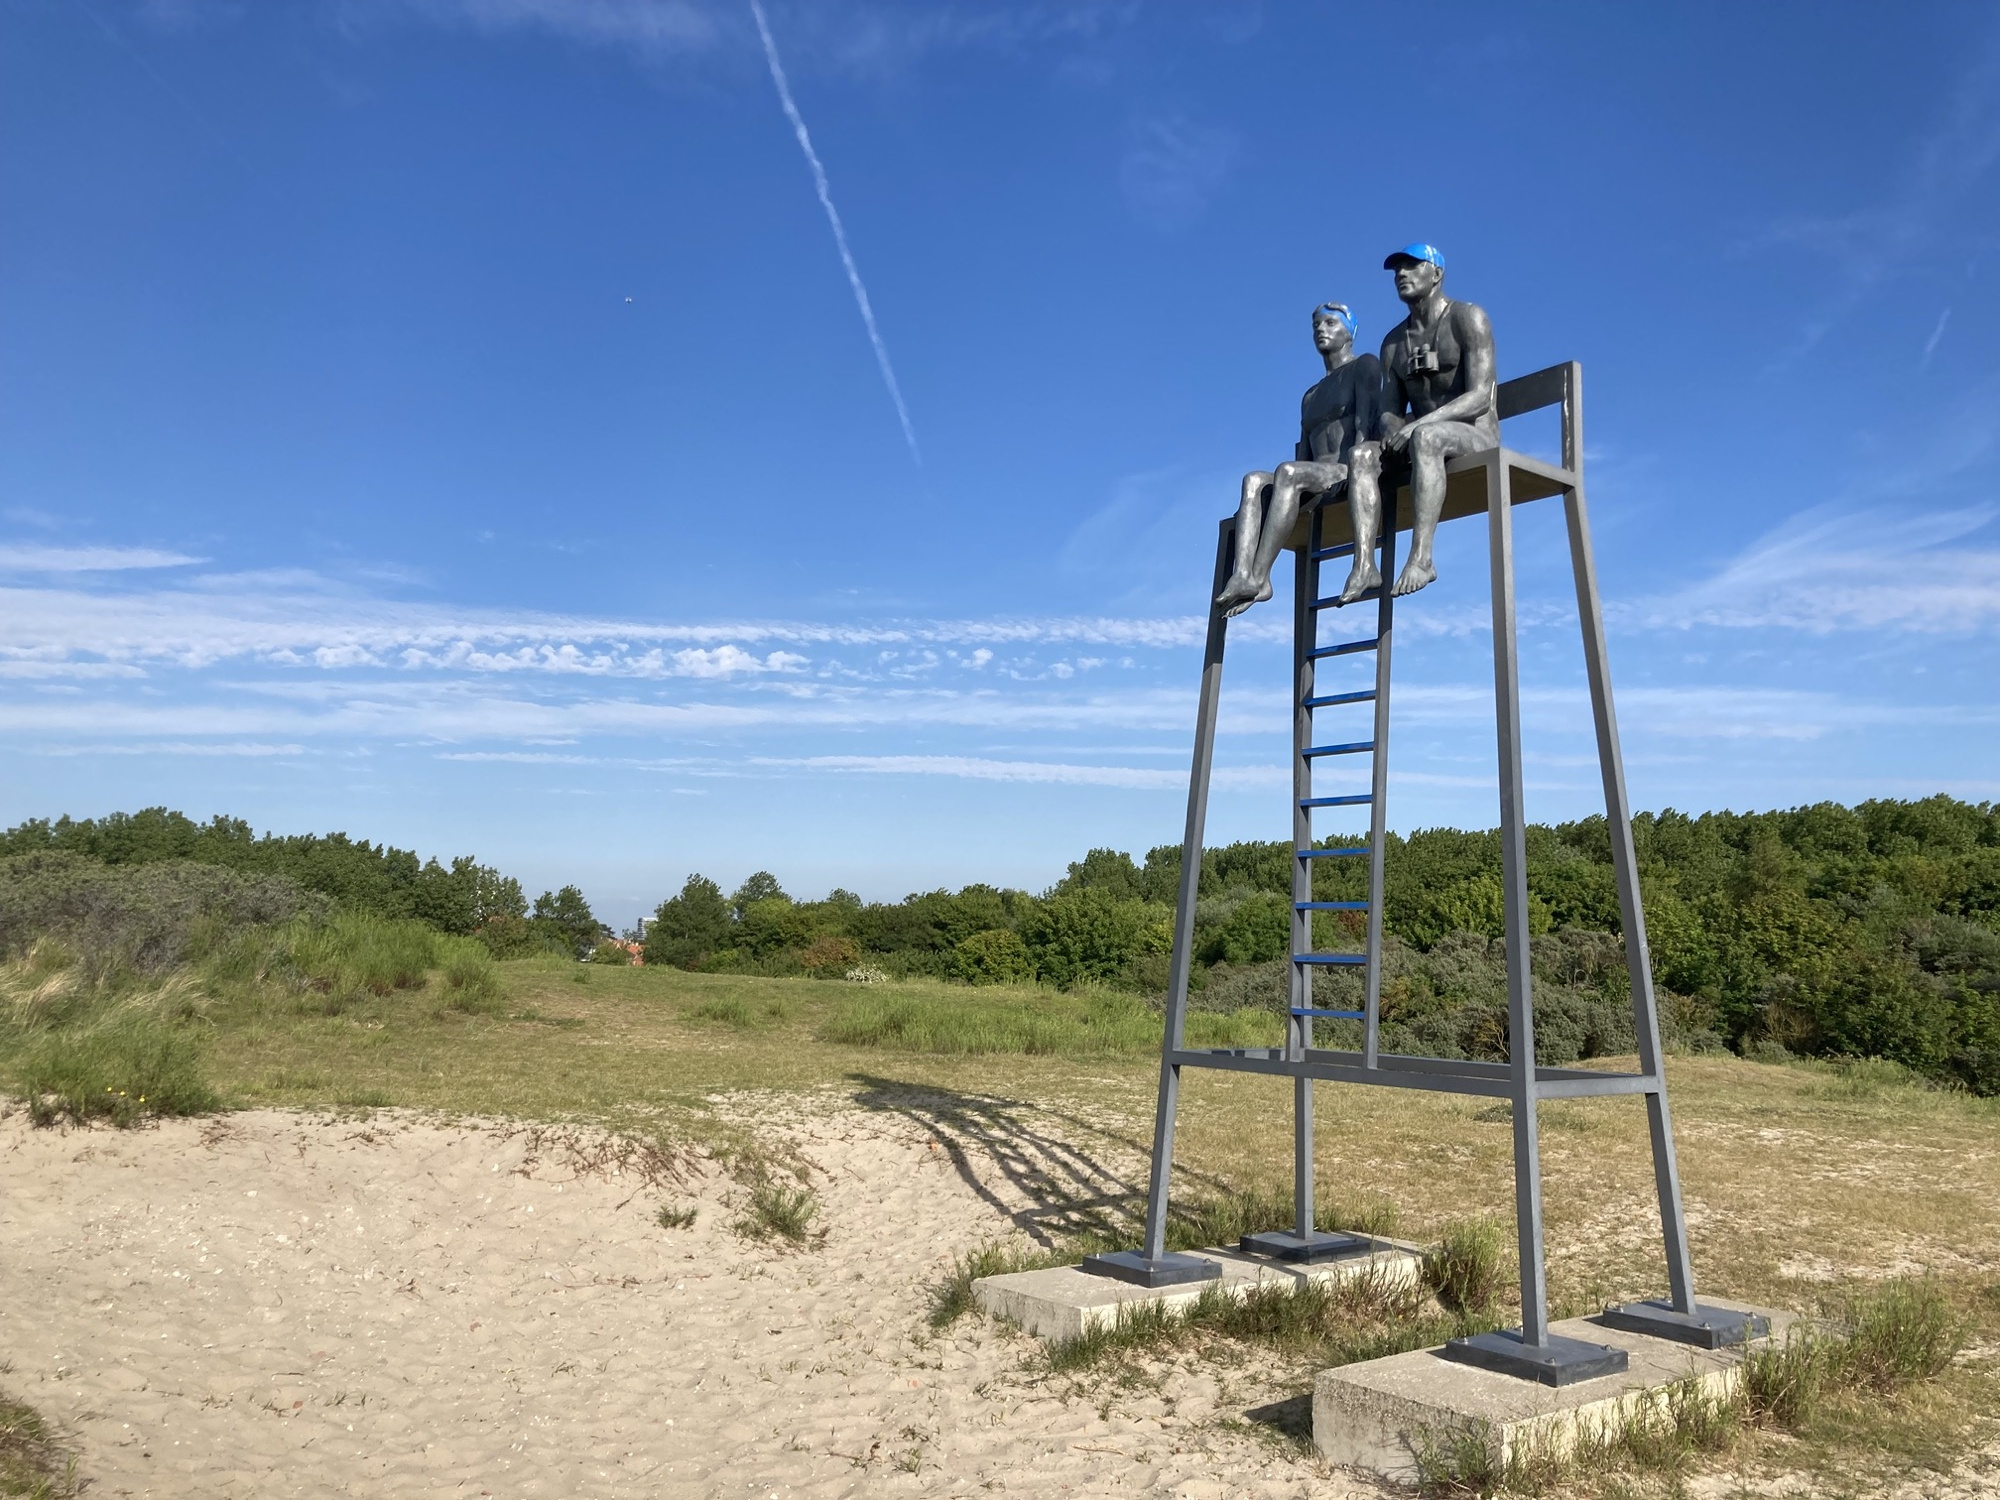 Skulptur zweier Personen, die auf einem Turm Richtung Strand schauen, sie stellen mutmaßlich Strand Security dar